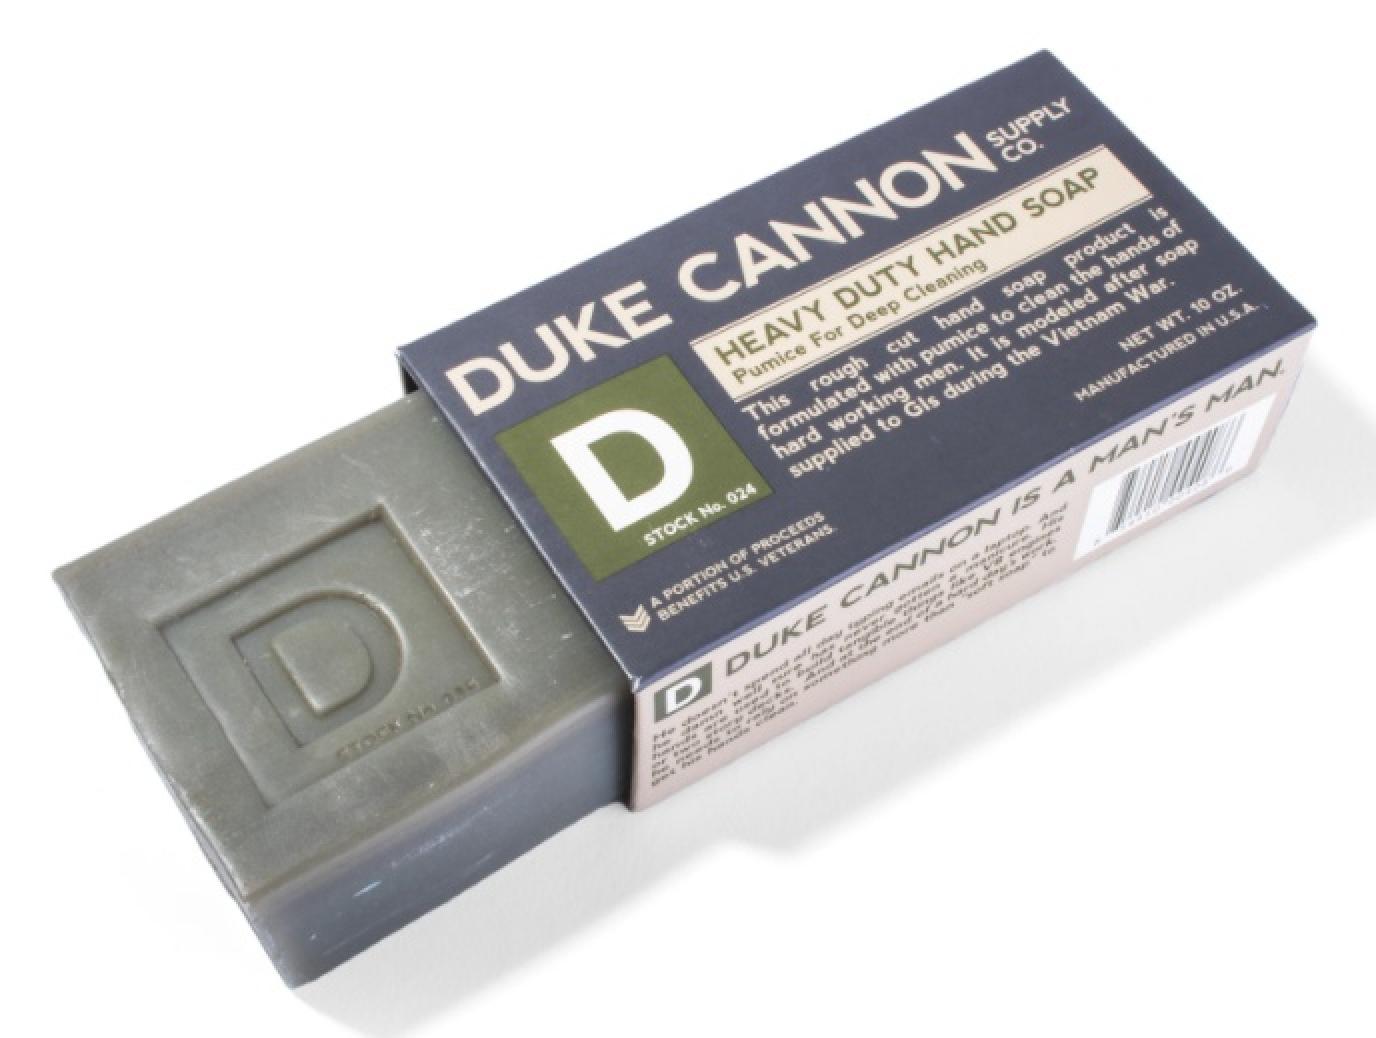 Duke Cannon Heavy Duty Hand Soap